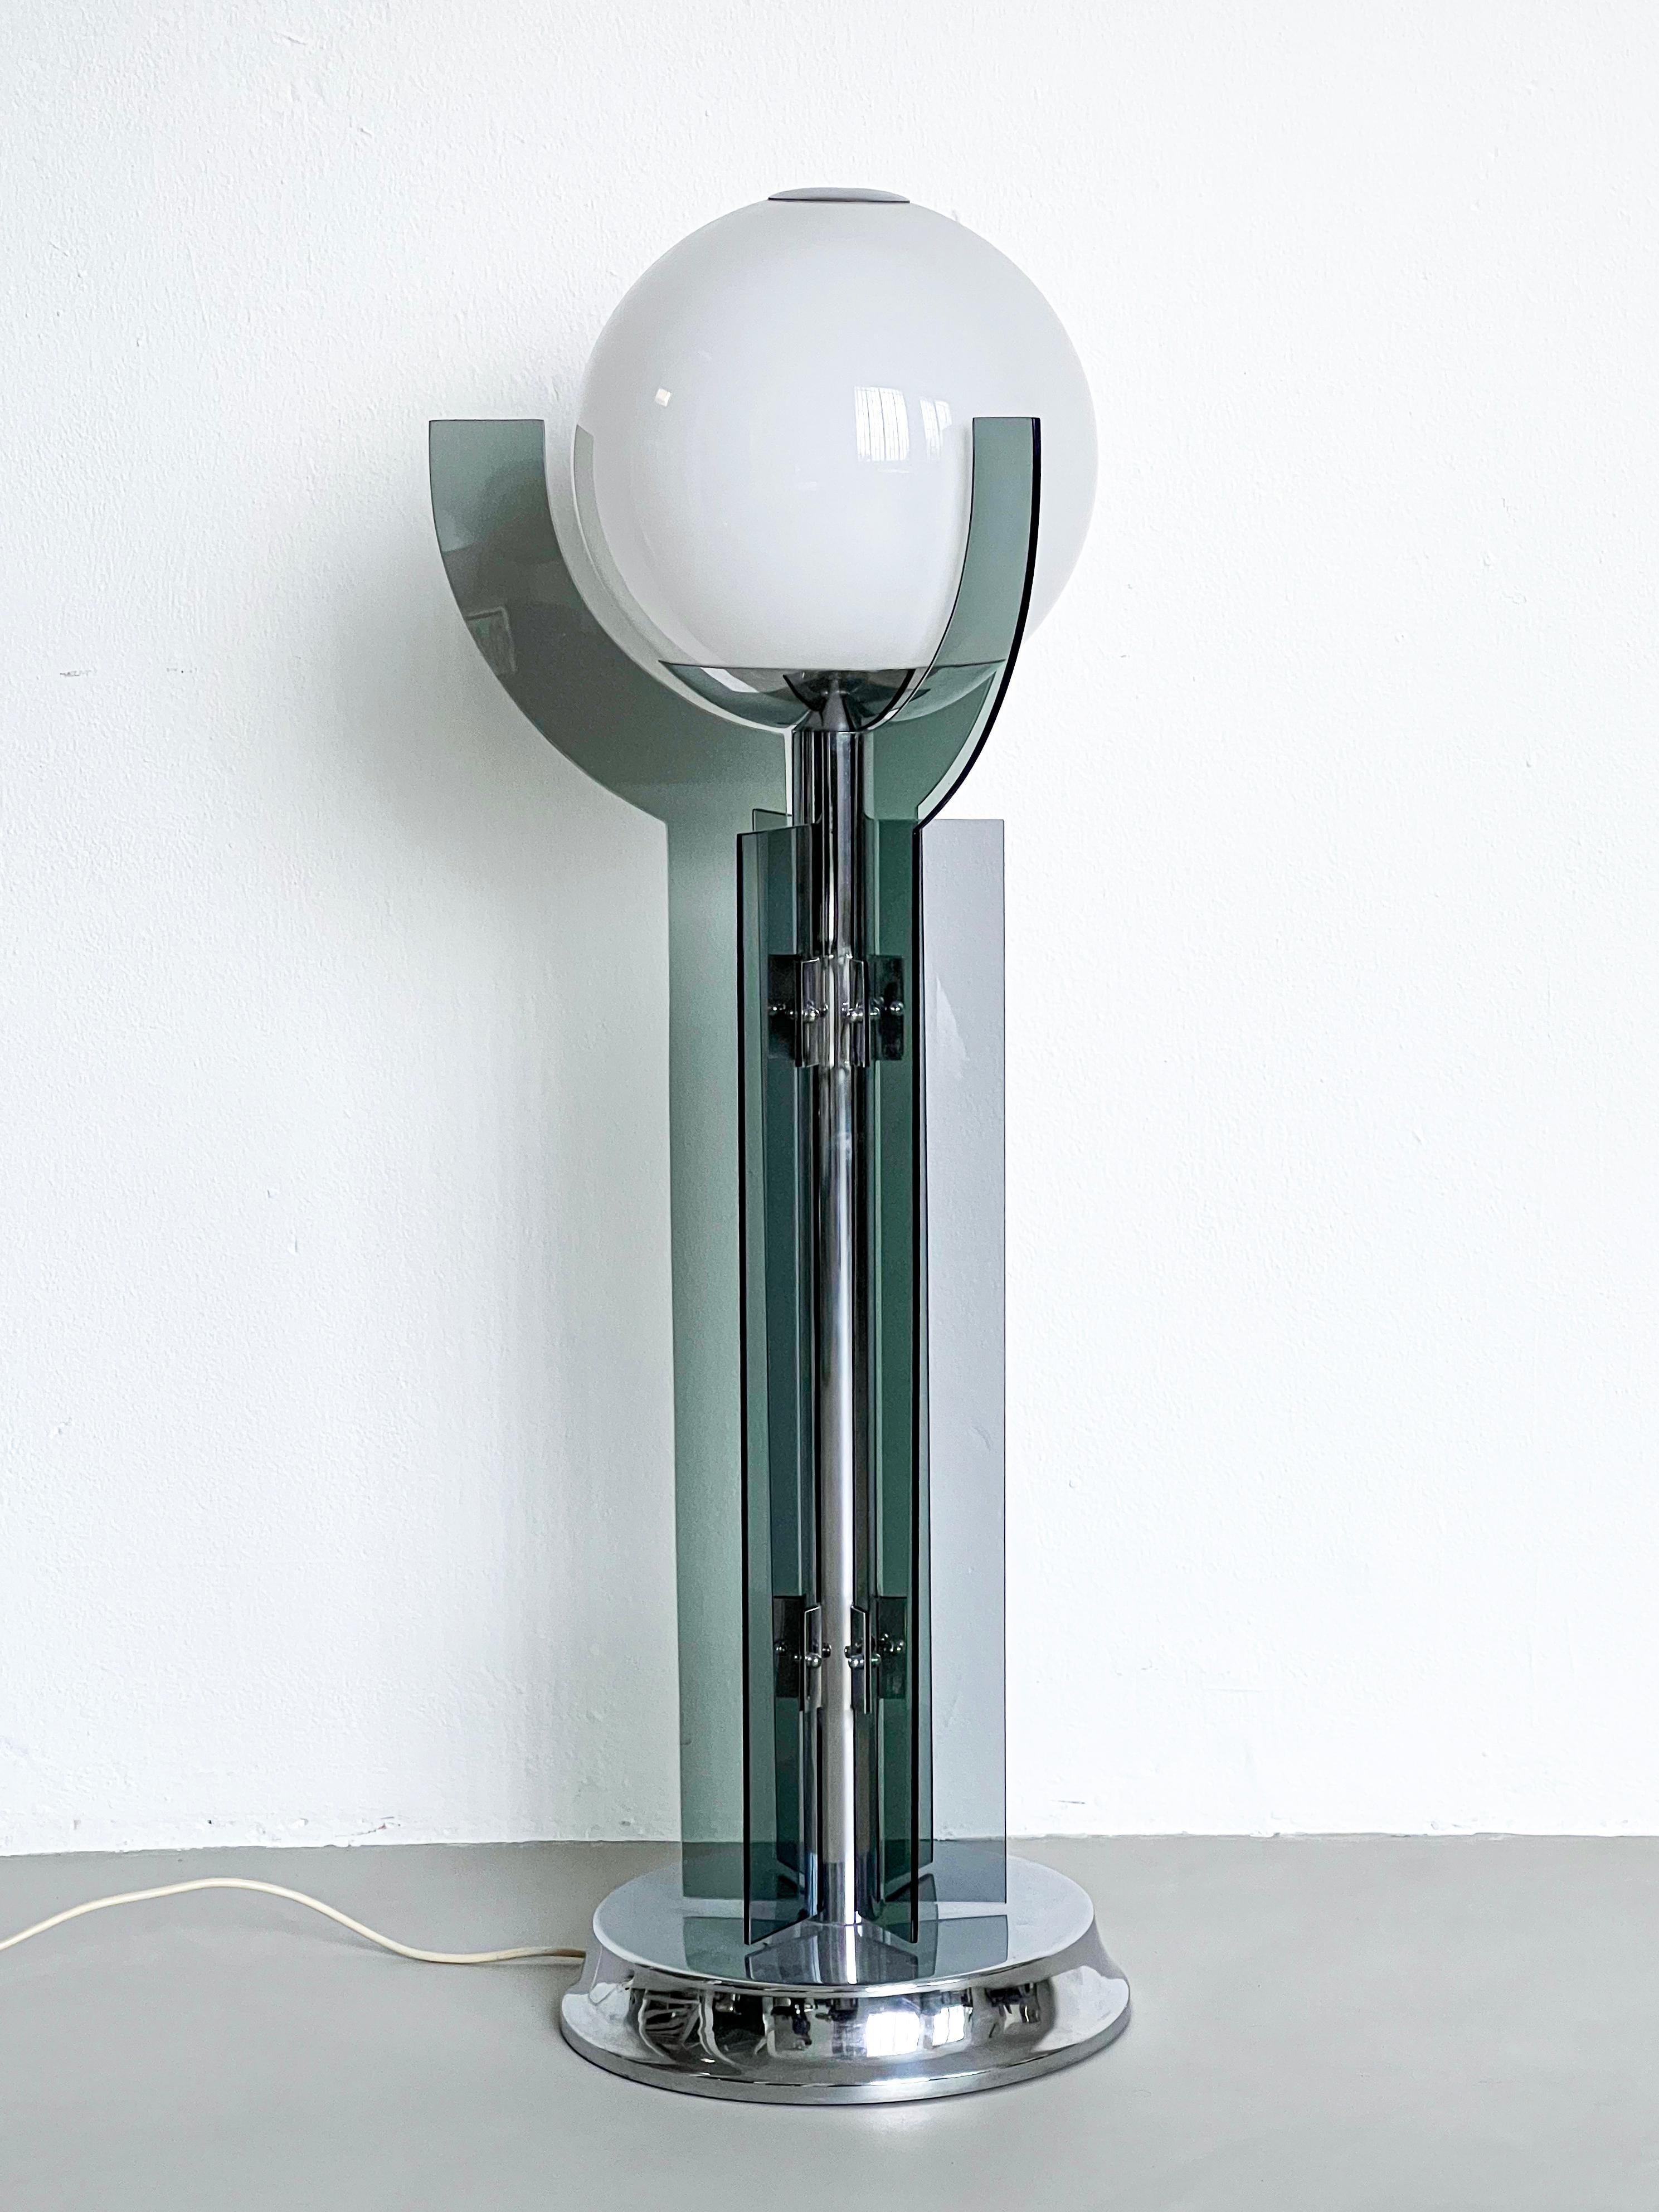 Dekorative Stehlampe - Skulpturale Glaslampe - Sammlerstück Space Age Lampe - Beleuchtung 

Außergewöhnliche und attraktive Stehlampe aus verchromtem Metall und Glas aus den 1980er Jahren, mit einem großen Opalglaskugel-Lampenschirm und drei